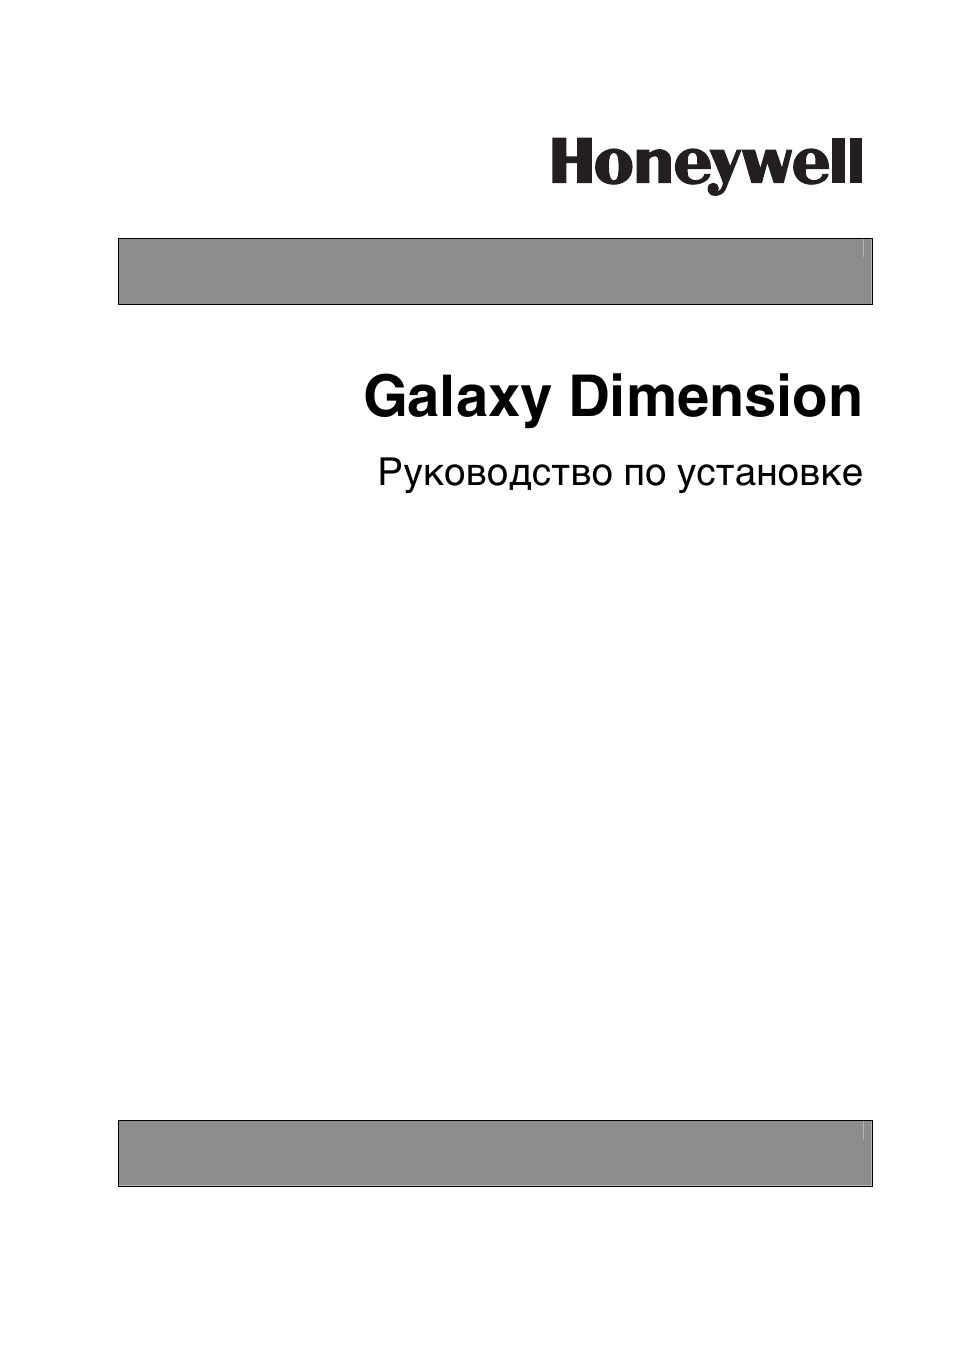 Инструкция по эксплуатации Honeywell Руководство по установке контрольных панелей серии Galaxy Dimension | 260 страниц